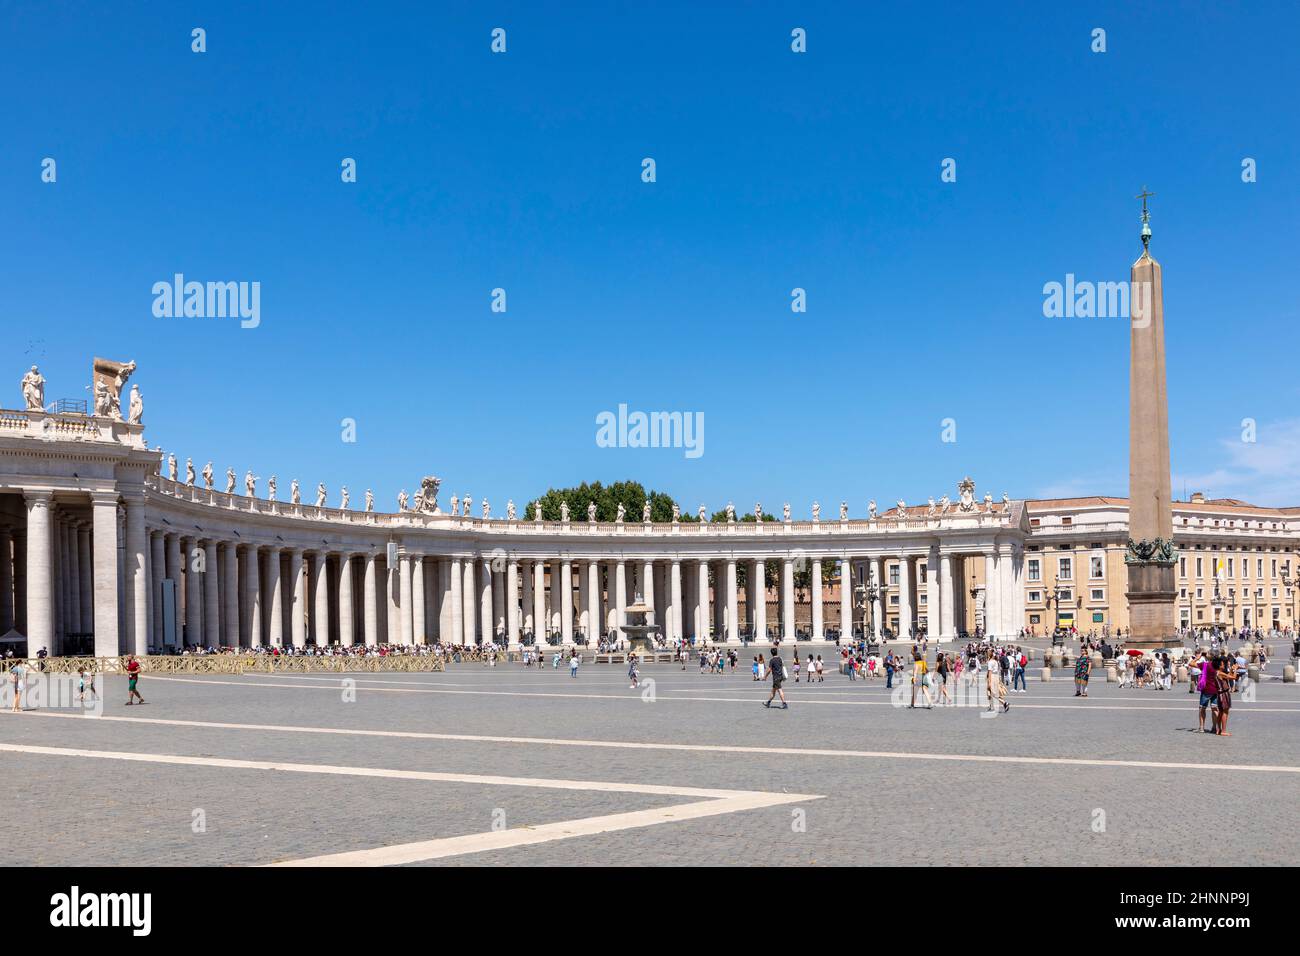 Les touristes visitent la place Saint-Pierre au Vatican avec les célèbres bâtiments de Michel-Ange à Rome, en Italie Banque D'Images